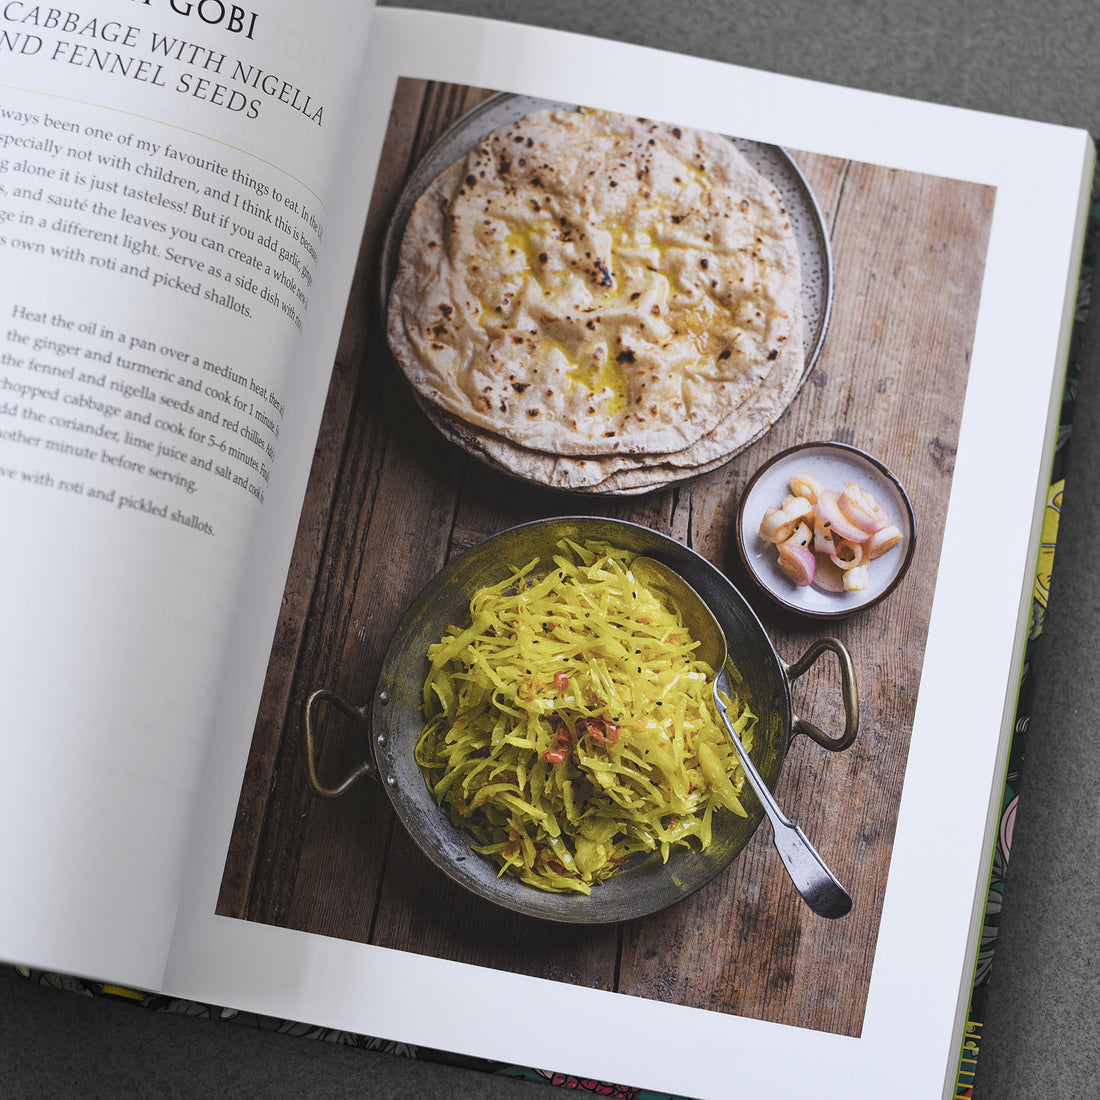 Zaika : Vegan recipes from India